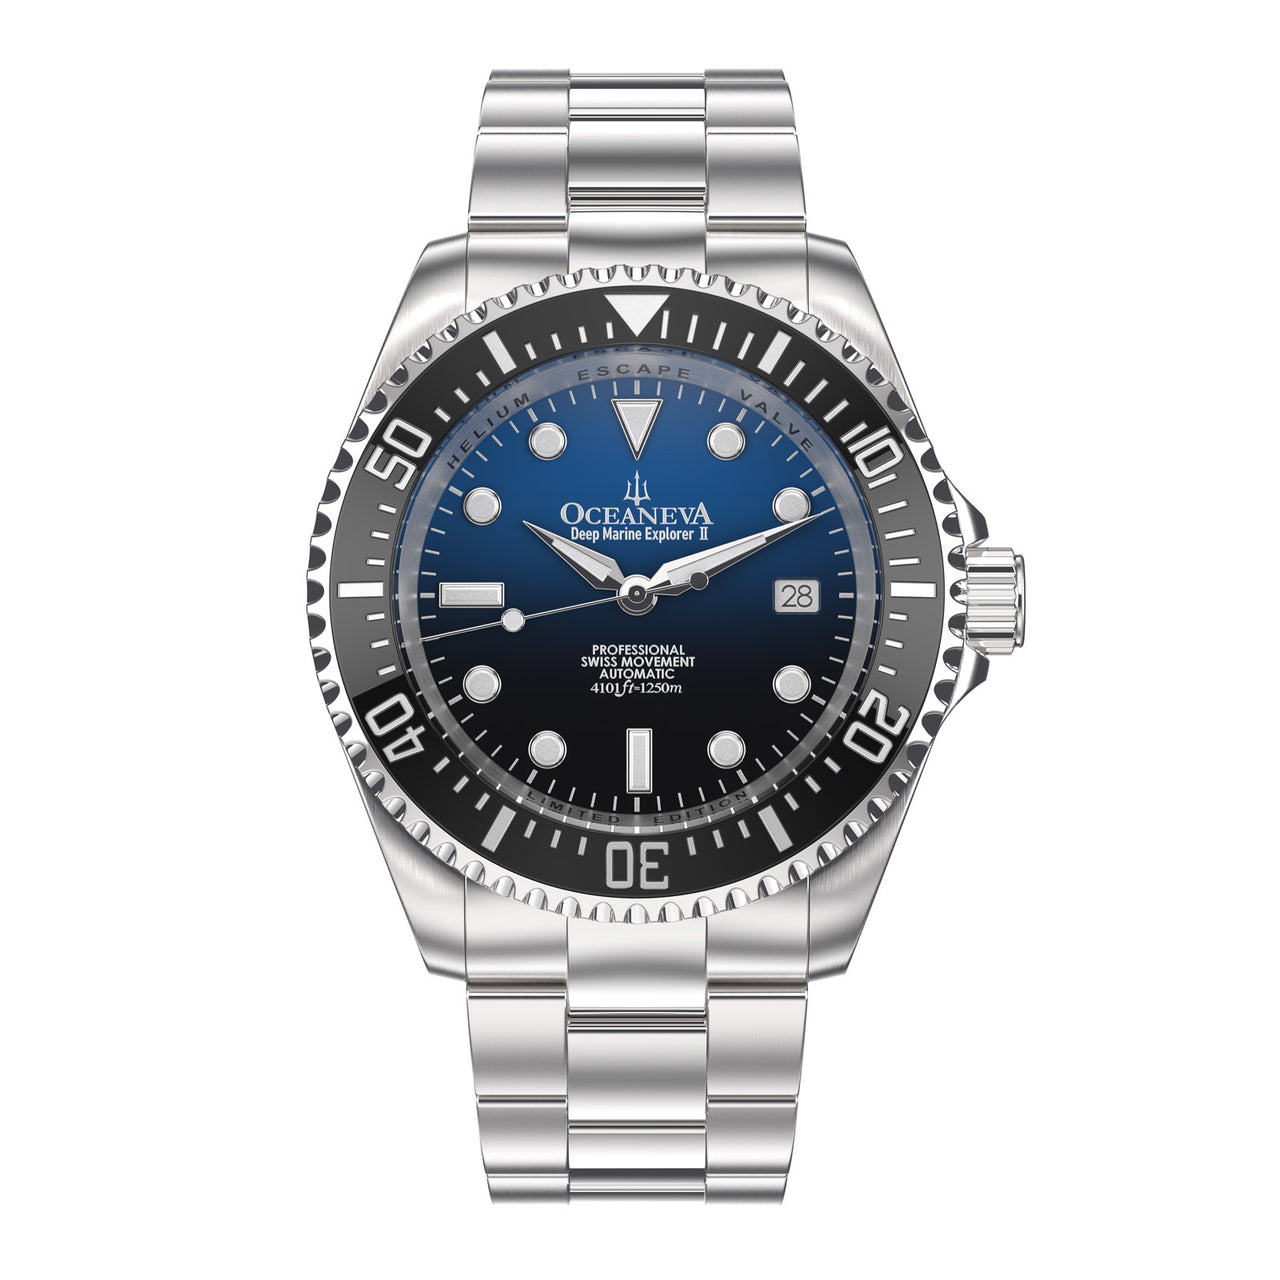 Oceaneva™ Men's Deep Marine Explorer II1250M Pro Diver Watch Blue Black